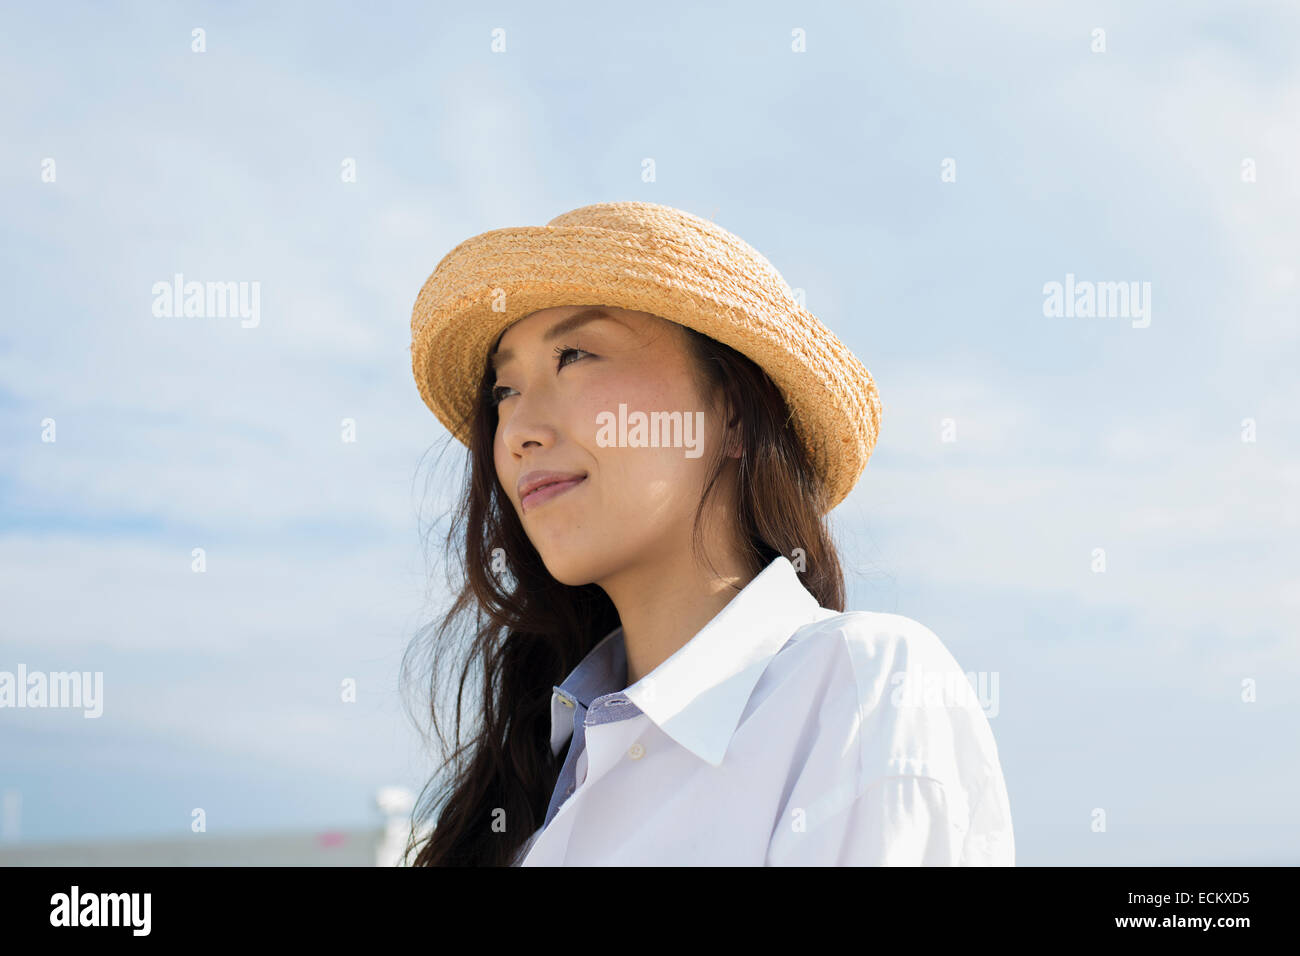 Cappello kobe immagini e fotografie stock ad alta risoluzione - Alamy